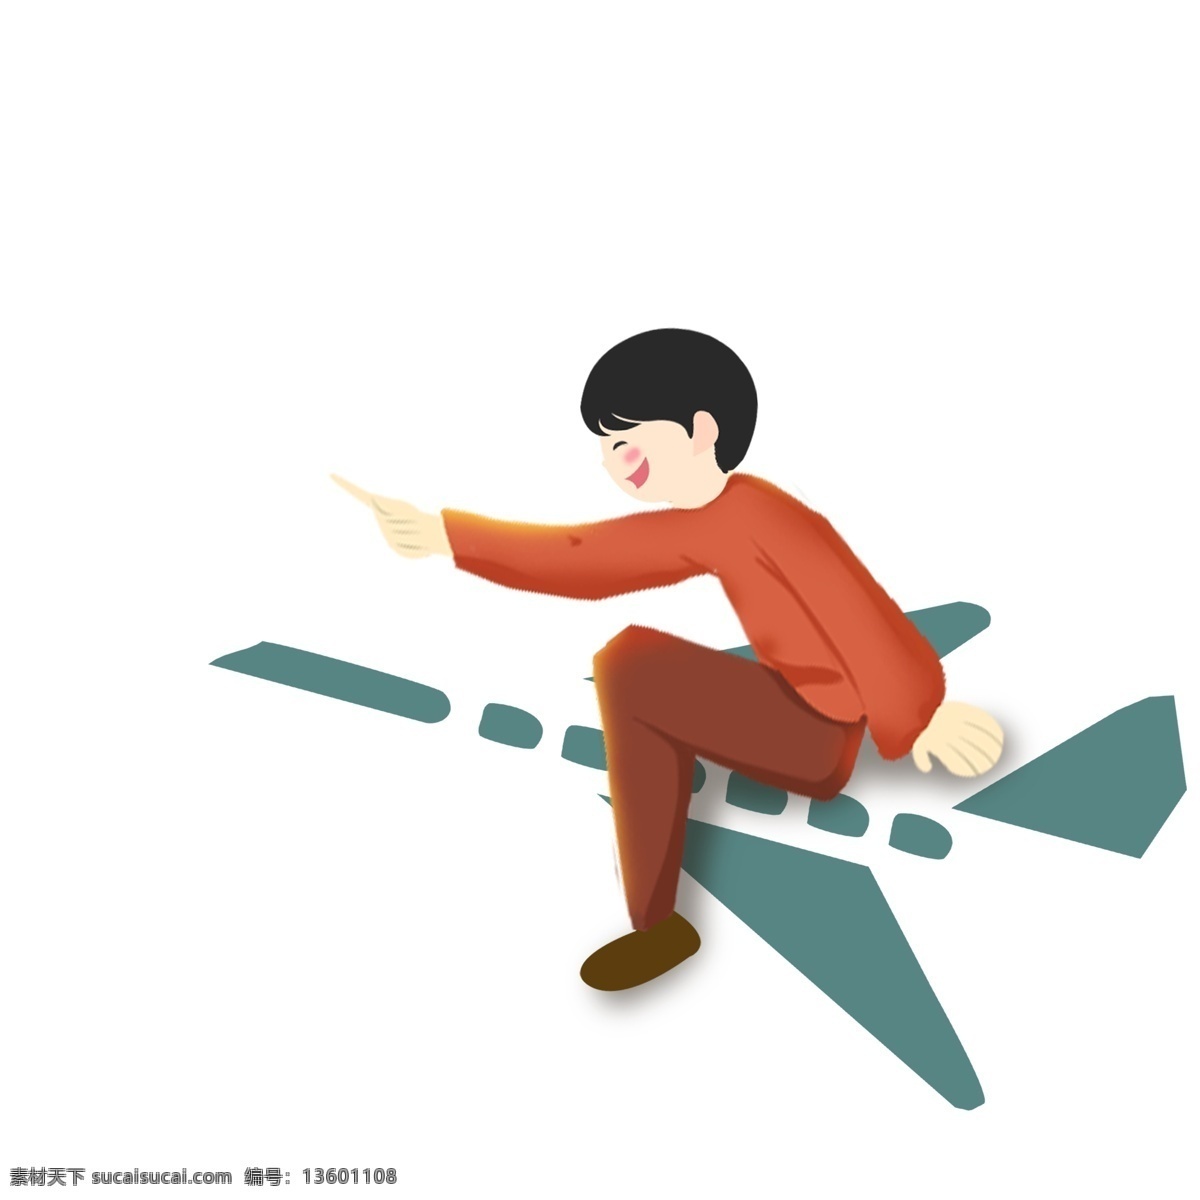 乘着 飞机 少年 人物 商用 元素 小清新 插画 梦想 创意设计 飞翔 卡通手绘